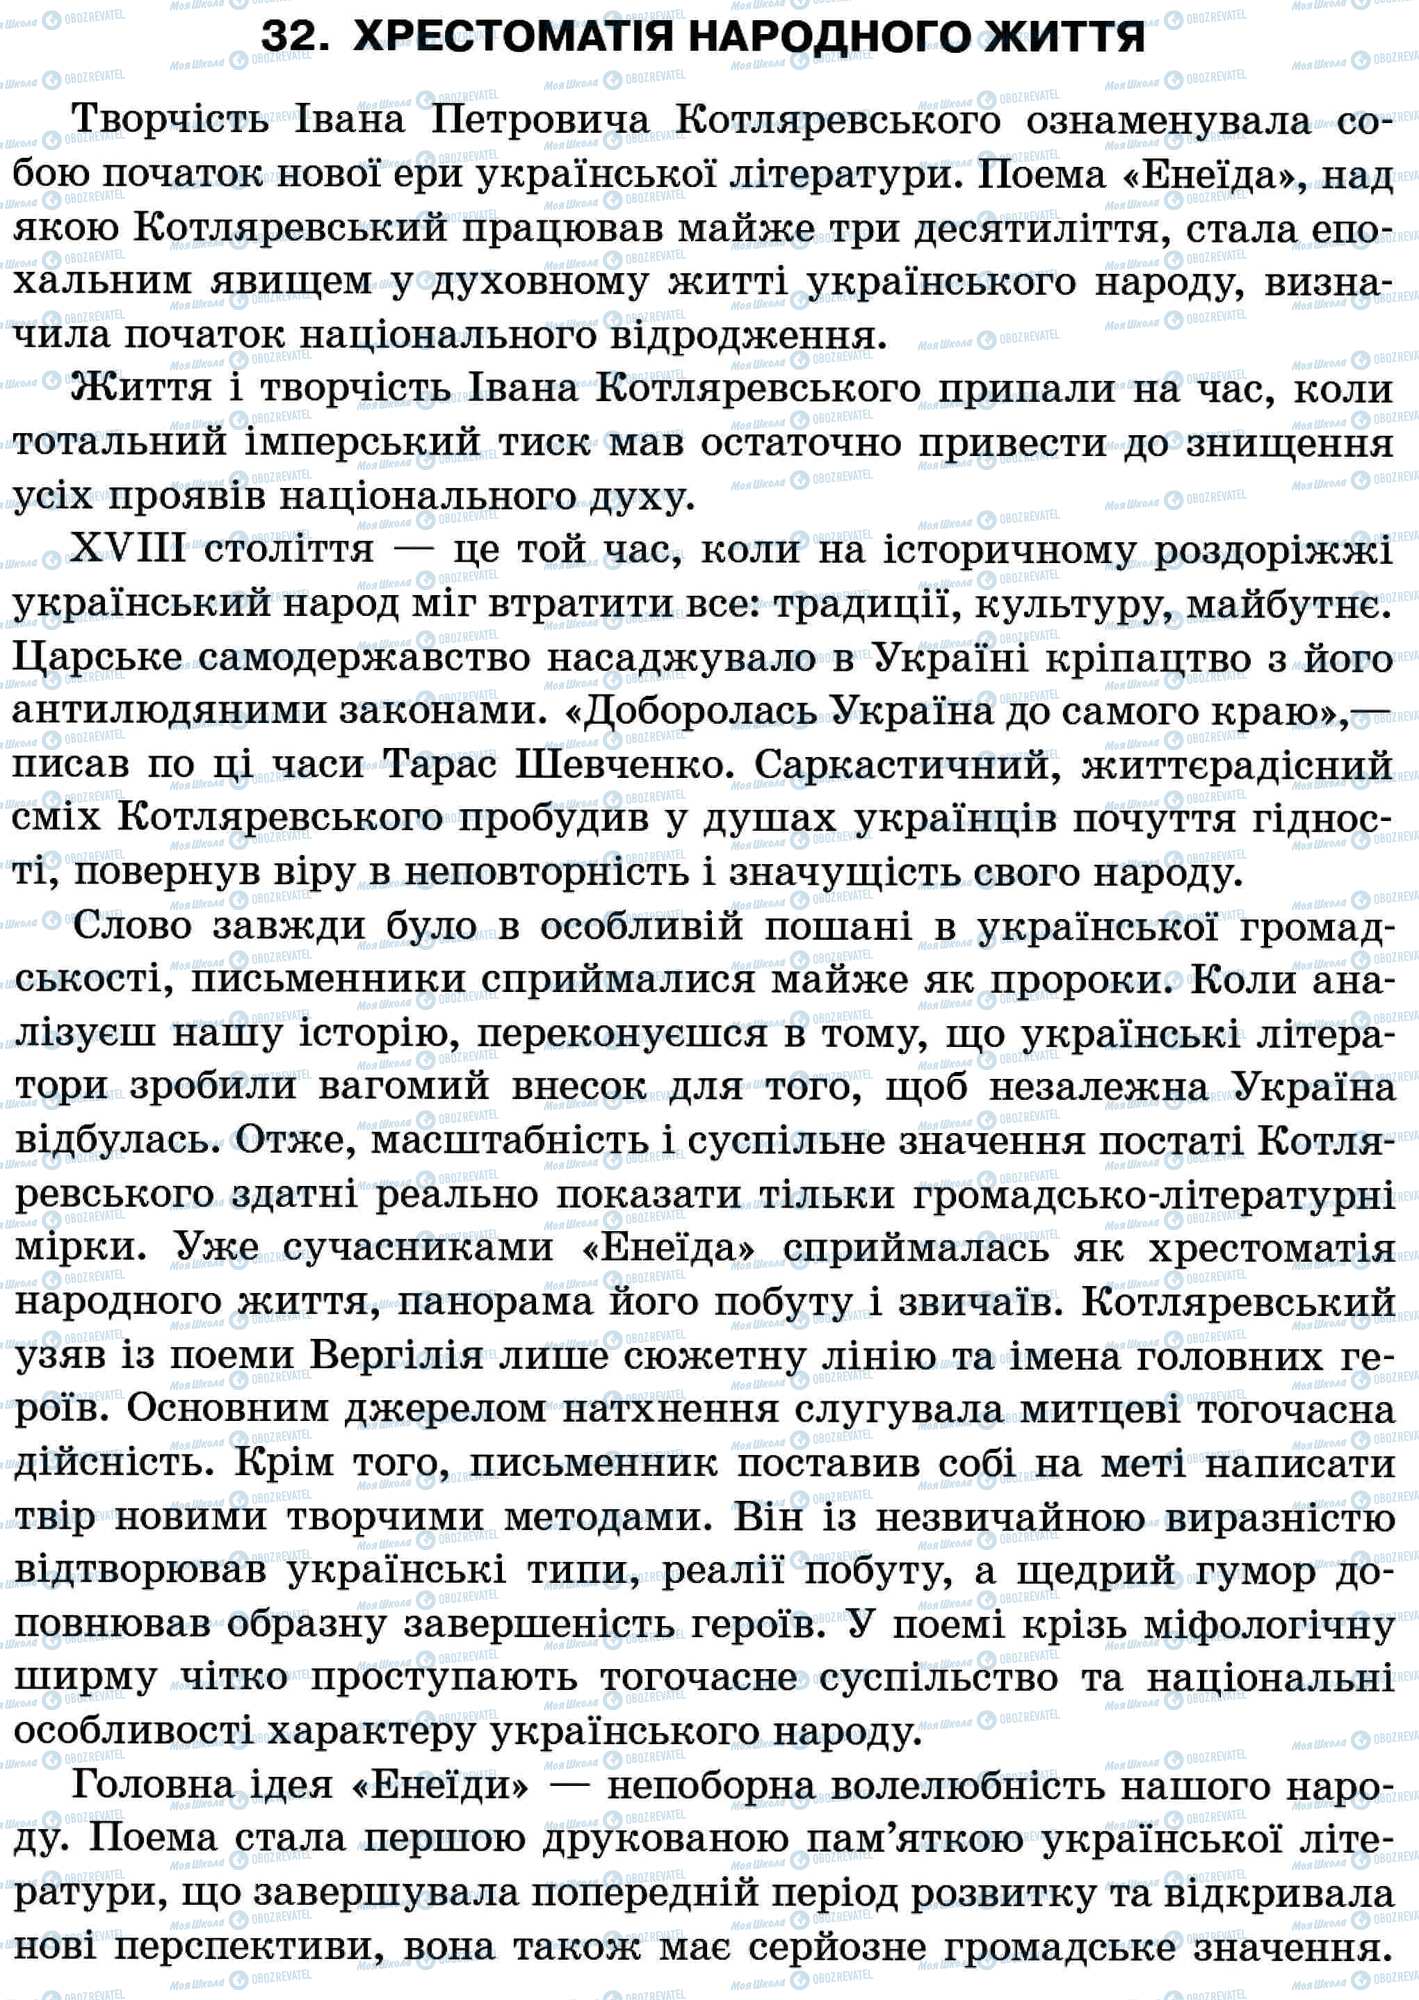 ДПА Українська мова 11 клас сторінка 32. Хрестоматія народного життя